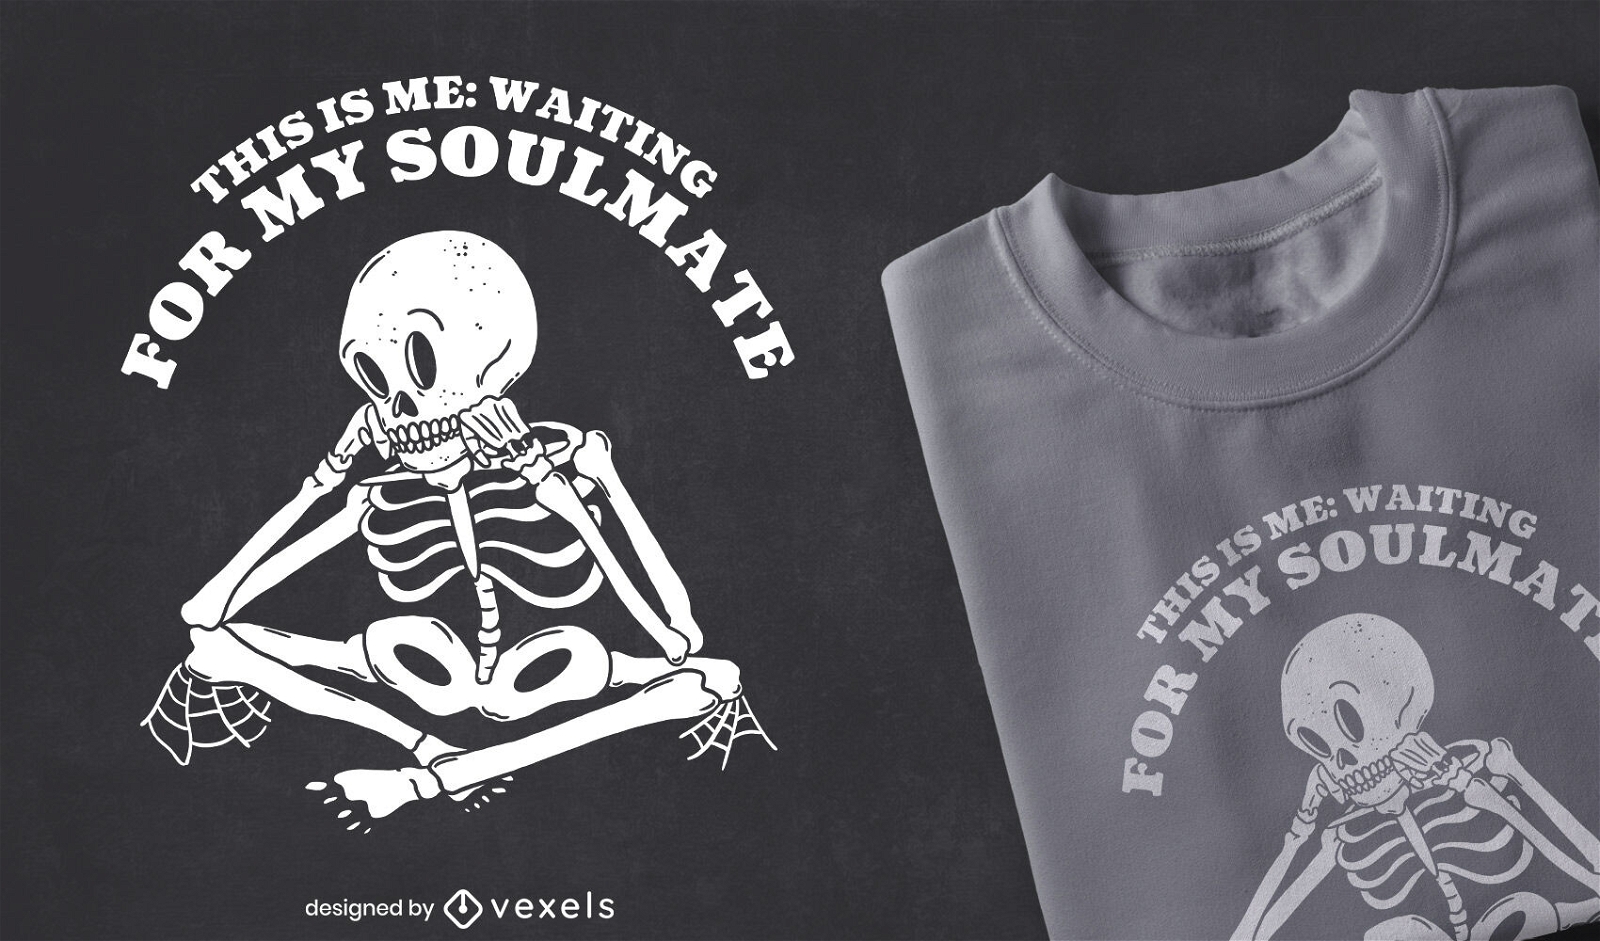 Esqueleto esperando dise?o de camiseta de amor.